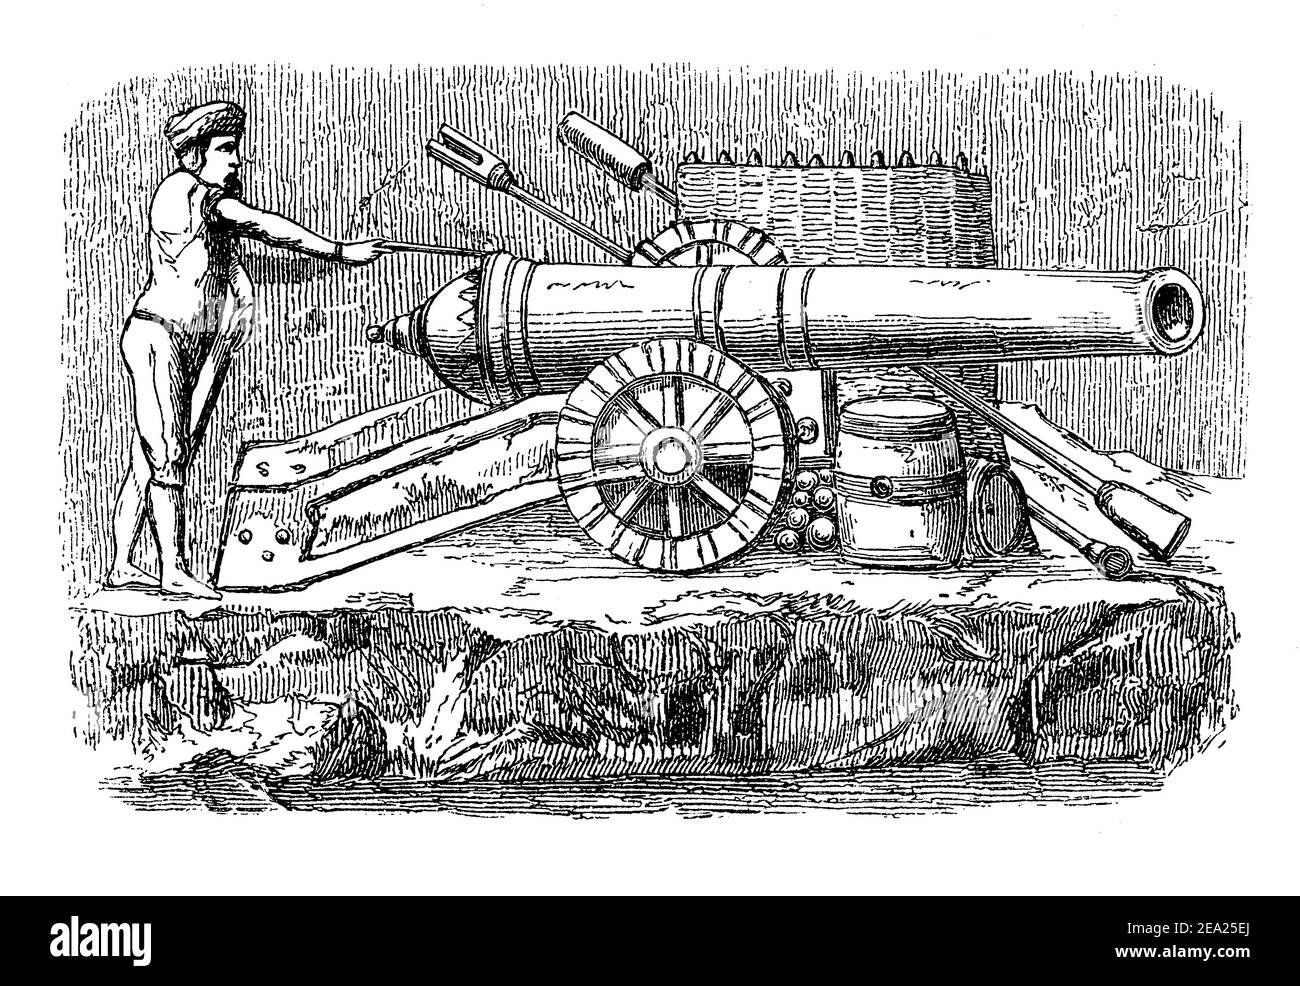 Capítulo final tipográfico, vignette medieval antigua decorando un libro sobre la historia de la artillería con un soldado de infantería disparando un cañón de rueda montado Foto de stock